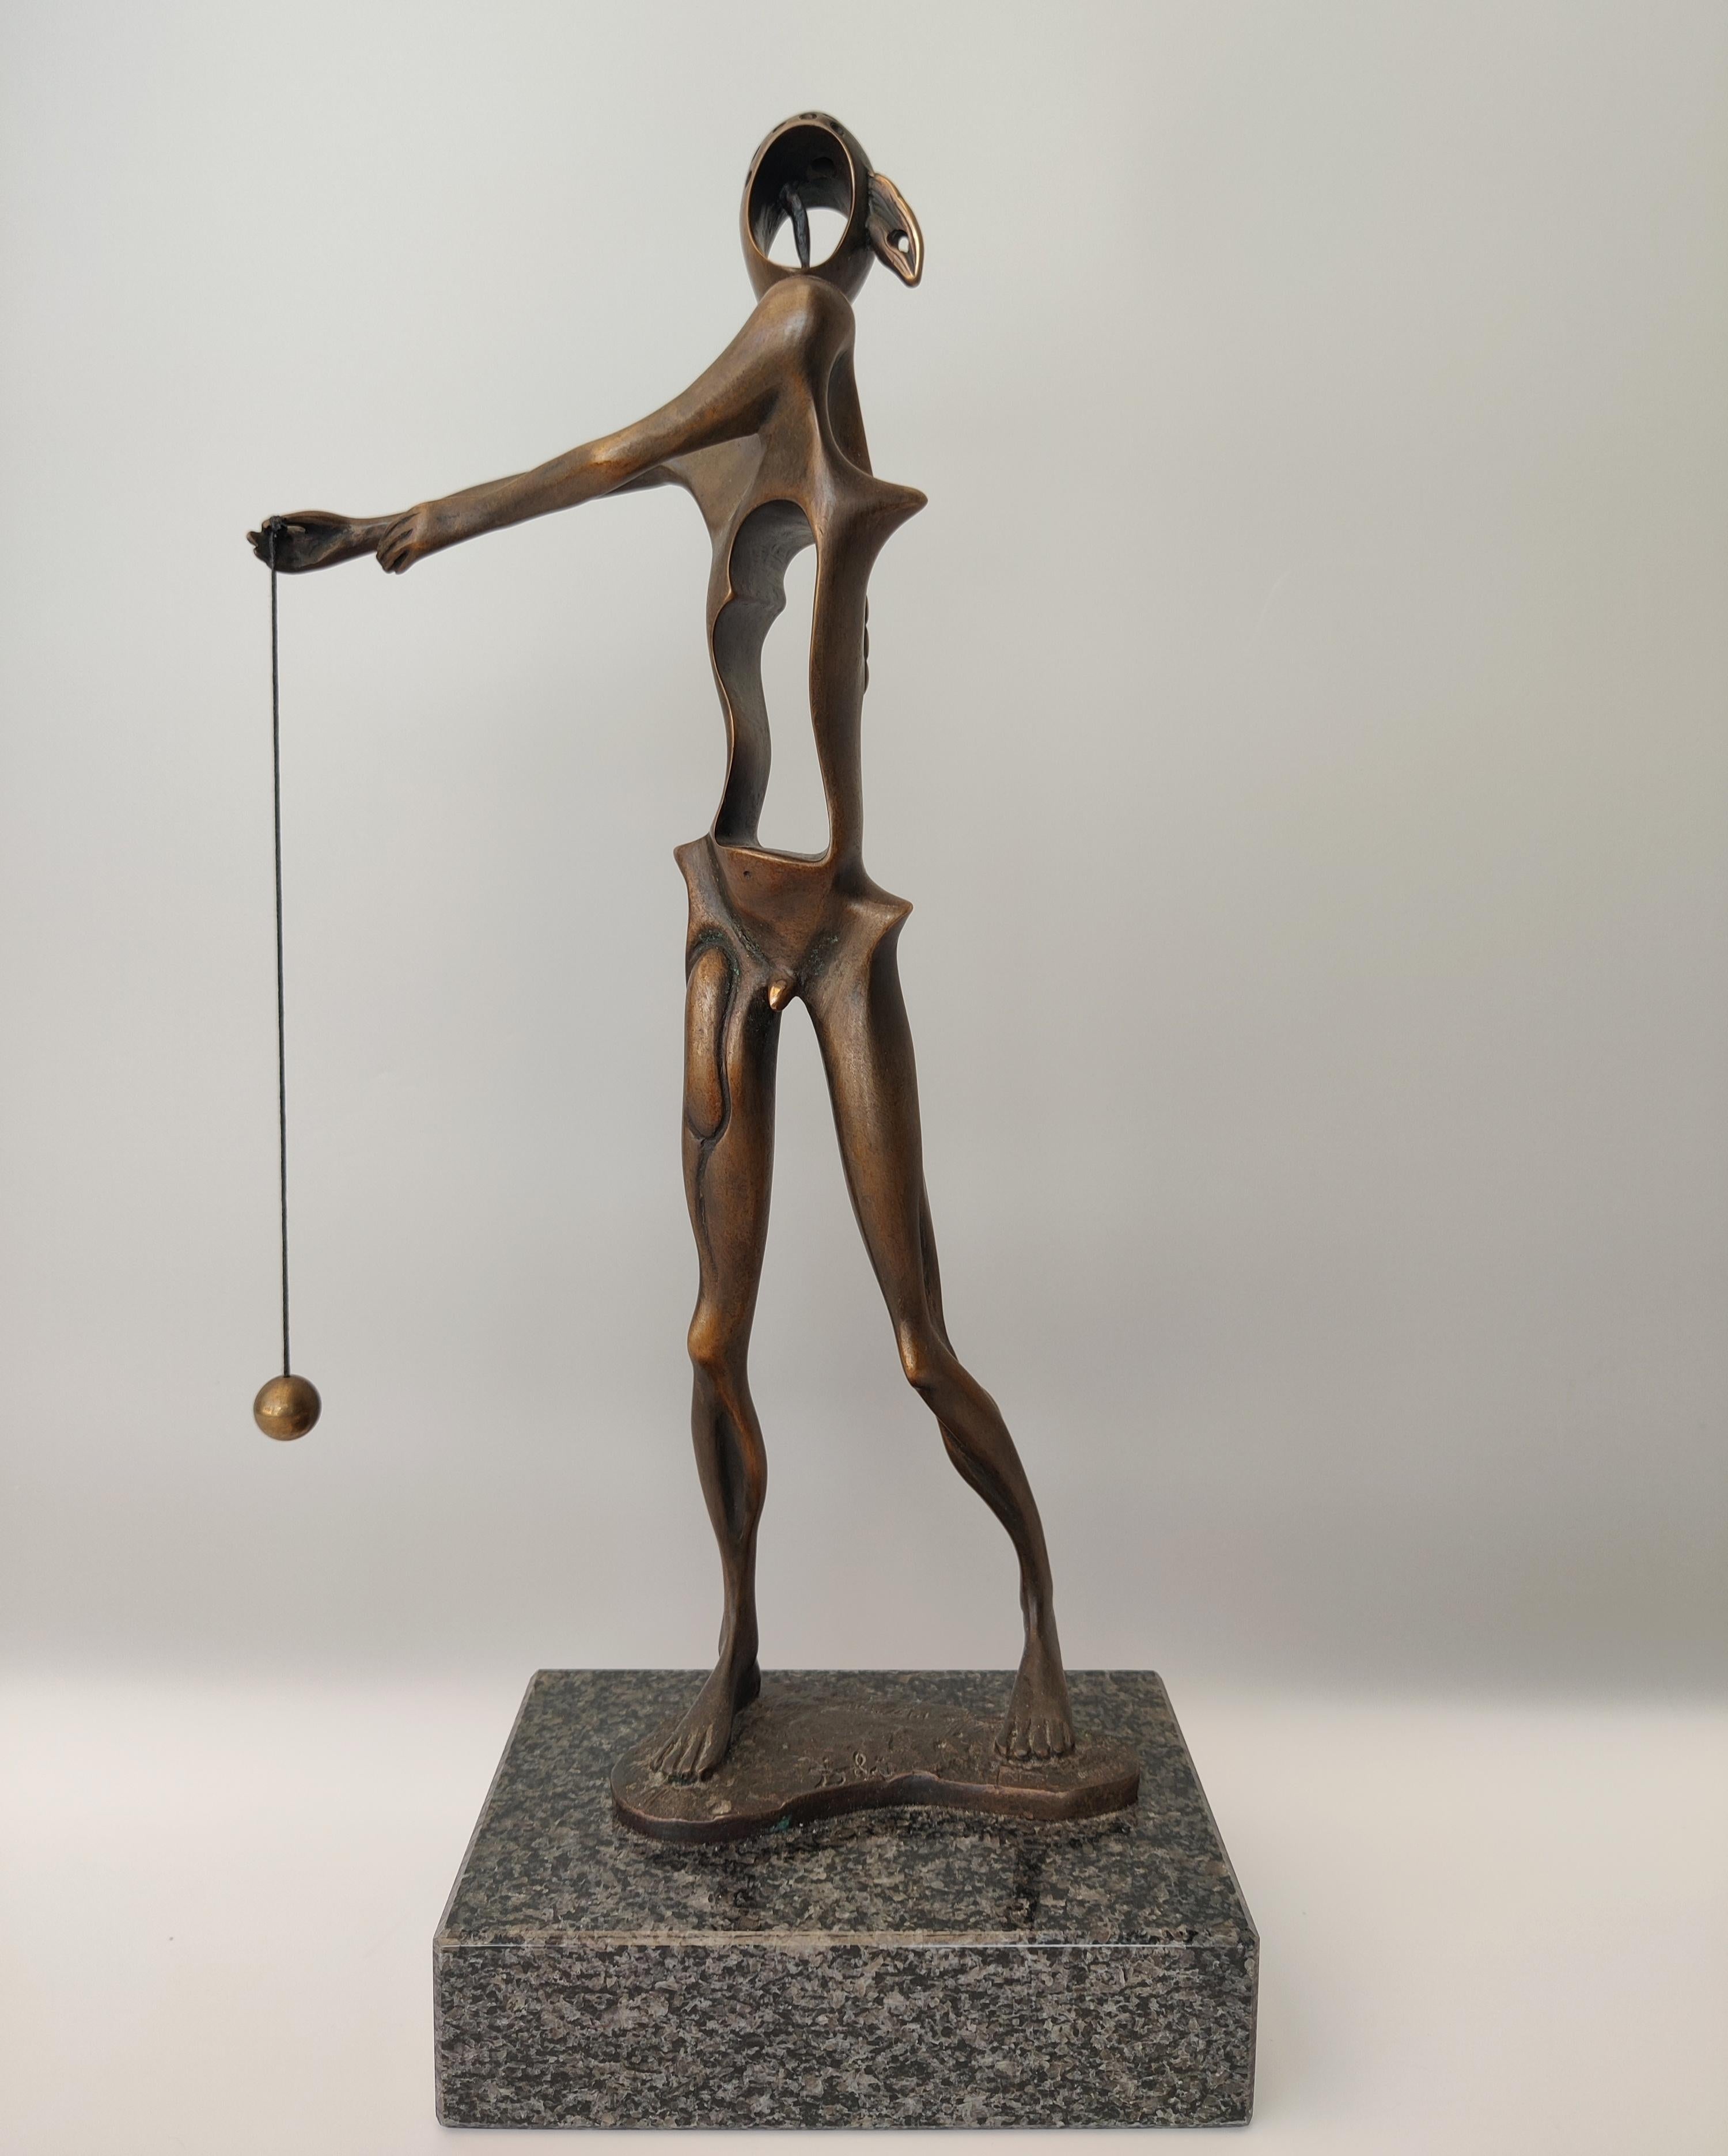 Did Salvador Dali make sculptures?